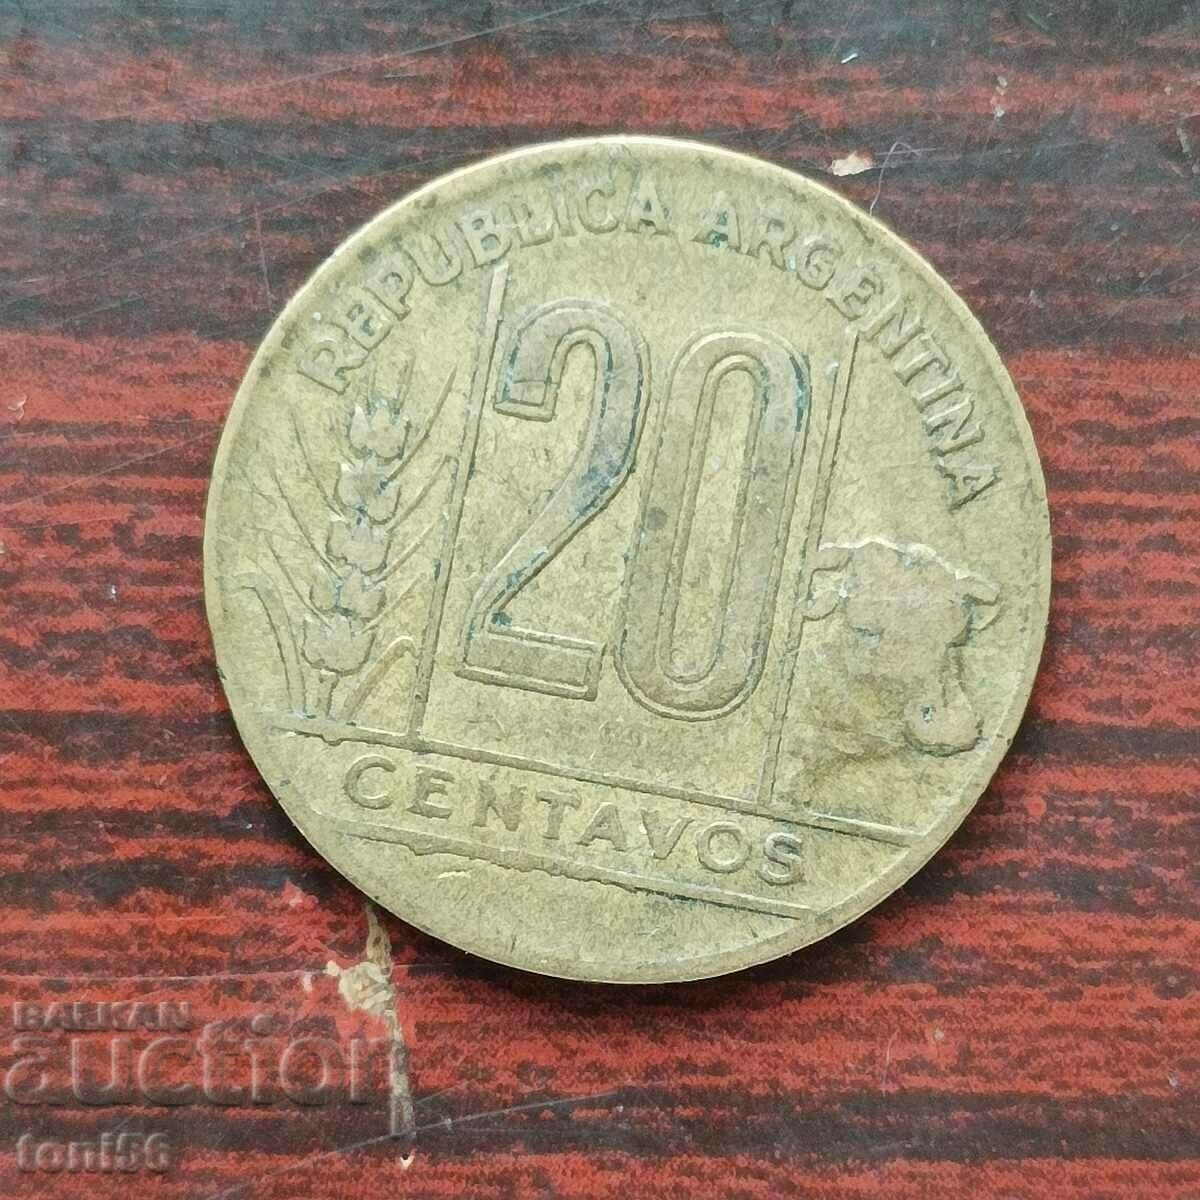 Argentina 20 centavos 1945